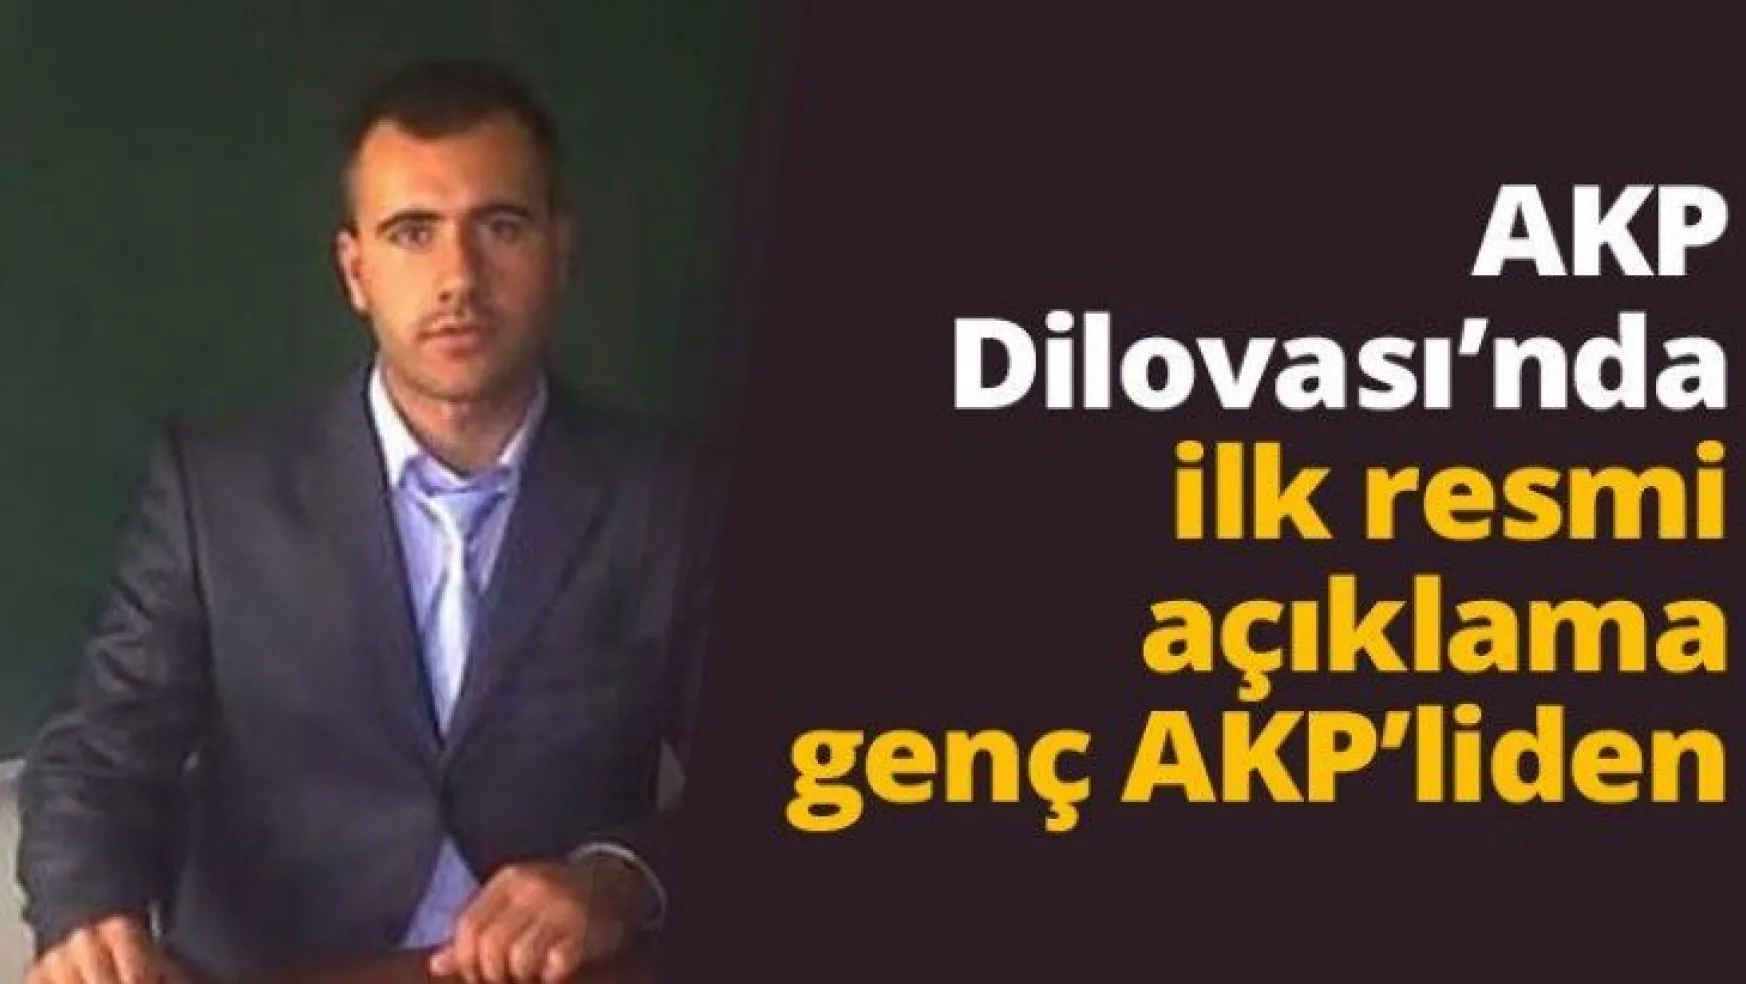 AKP Dilovası'nda ilk resmi açıklama genç AKP'liden